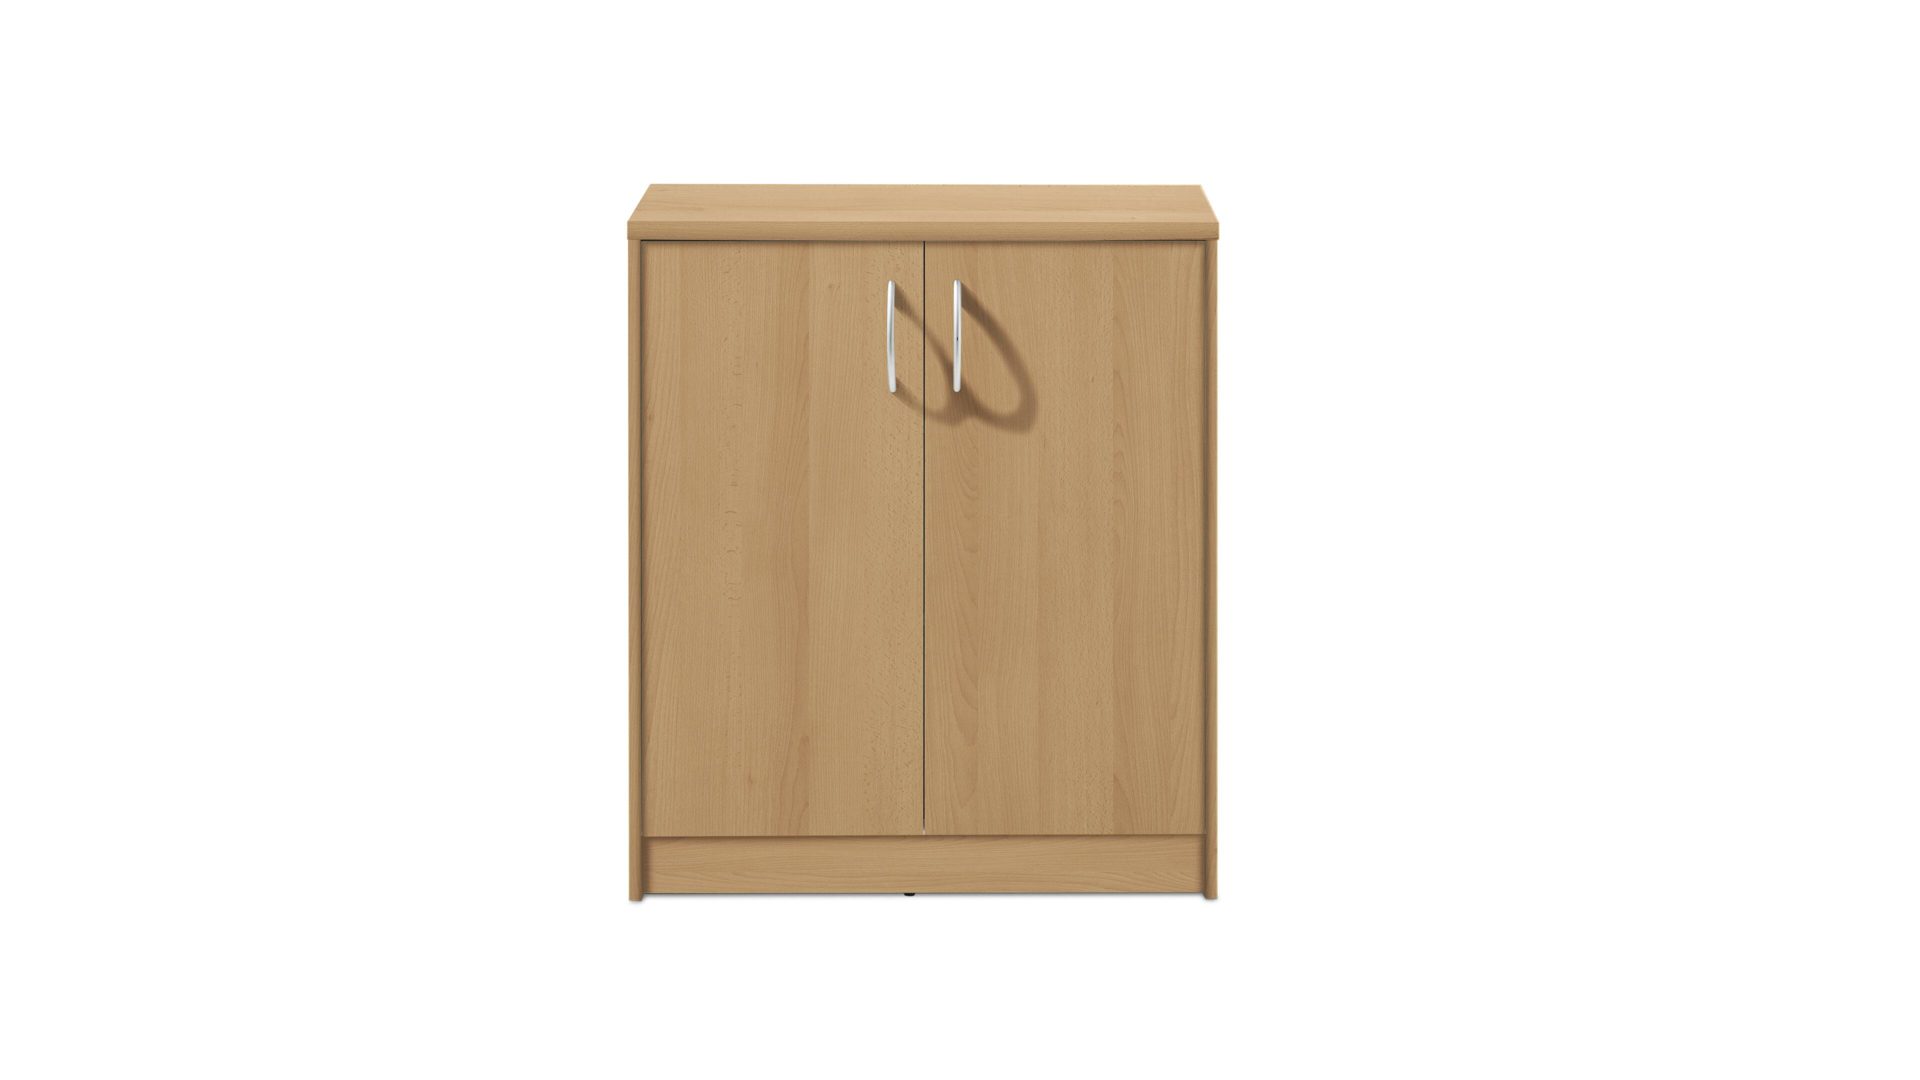 Türenkommode Bega consult aus Holz in Holzfarben Türenkommode bzw. Schrank buchefarbene Kunststoffoberflächen – zwei Türen